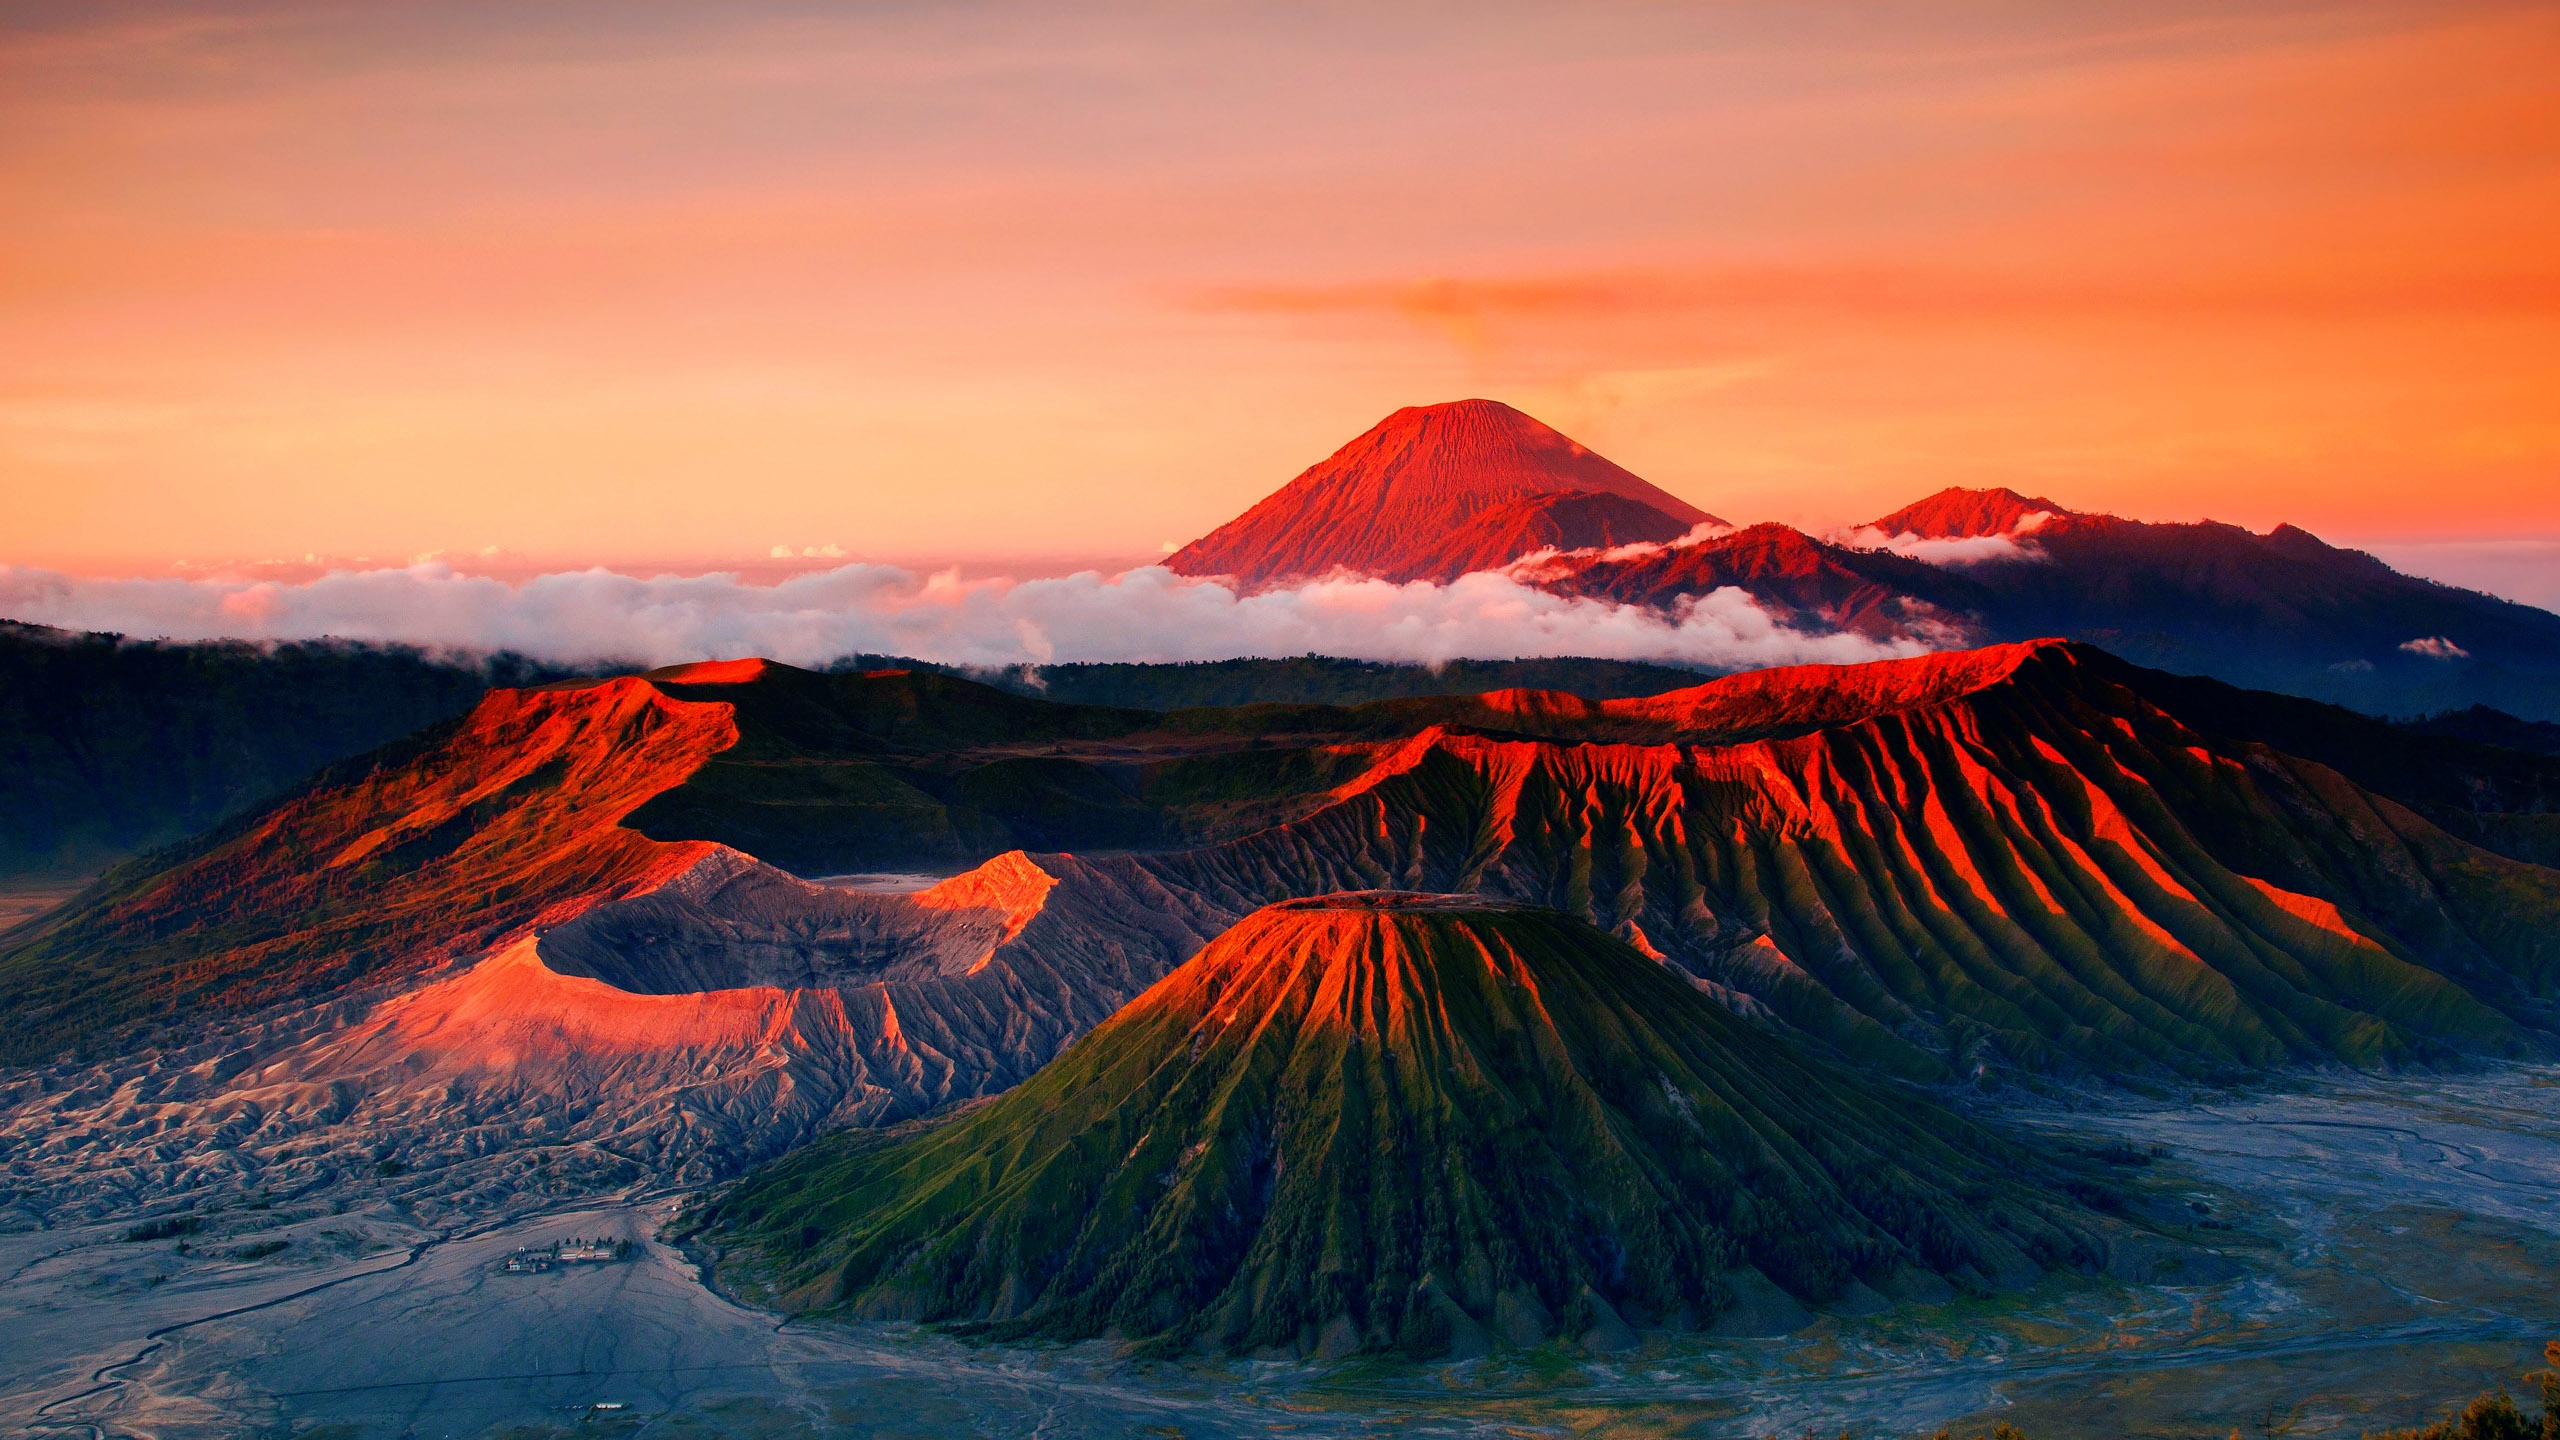 インドネシアの壁紙,自然,山,空,自然の風景,成層火山